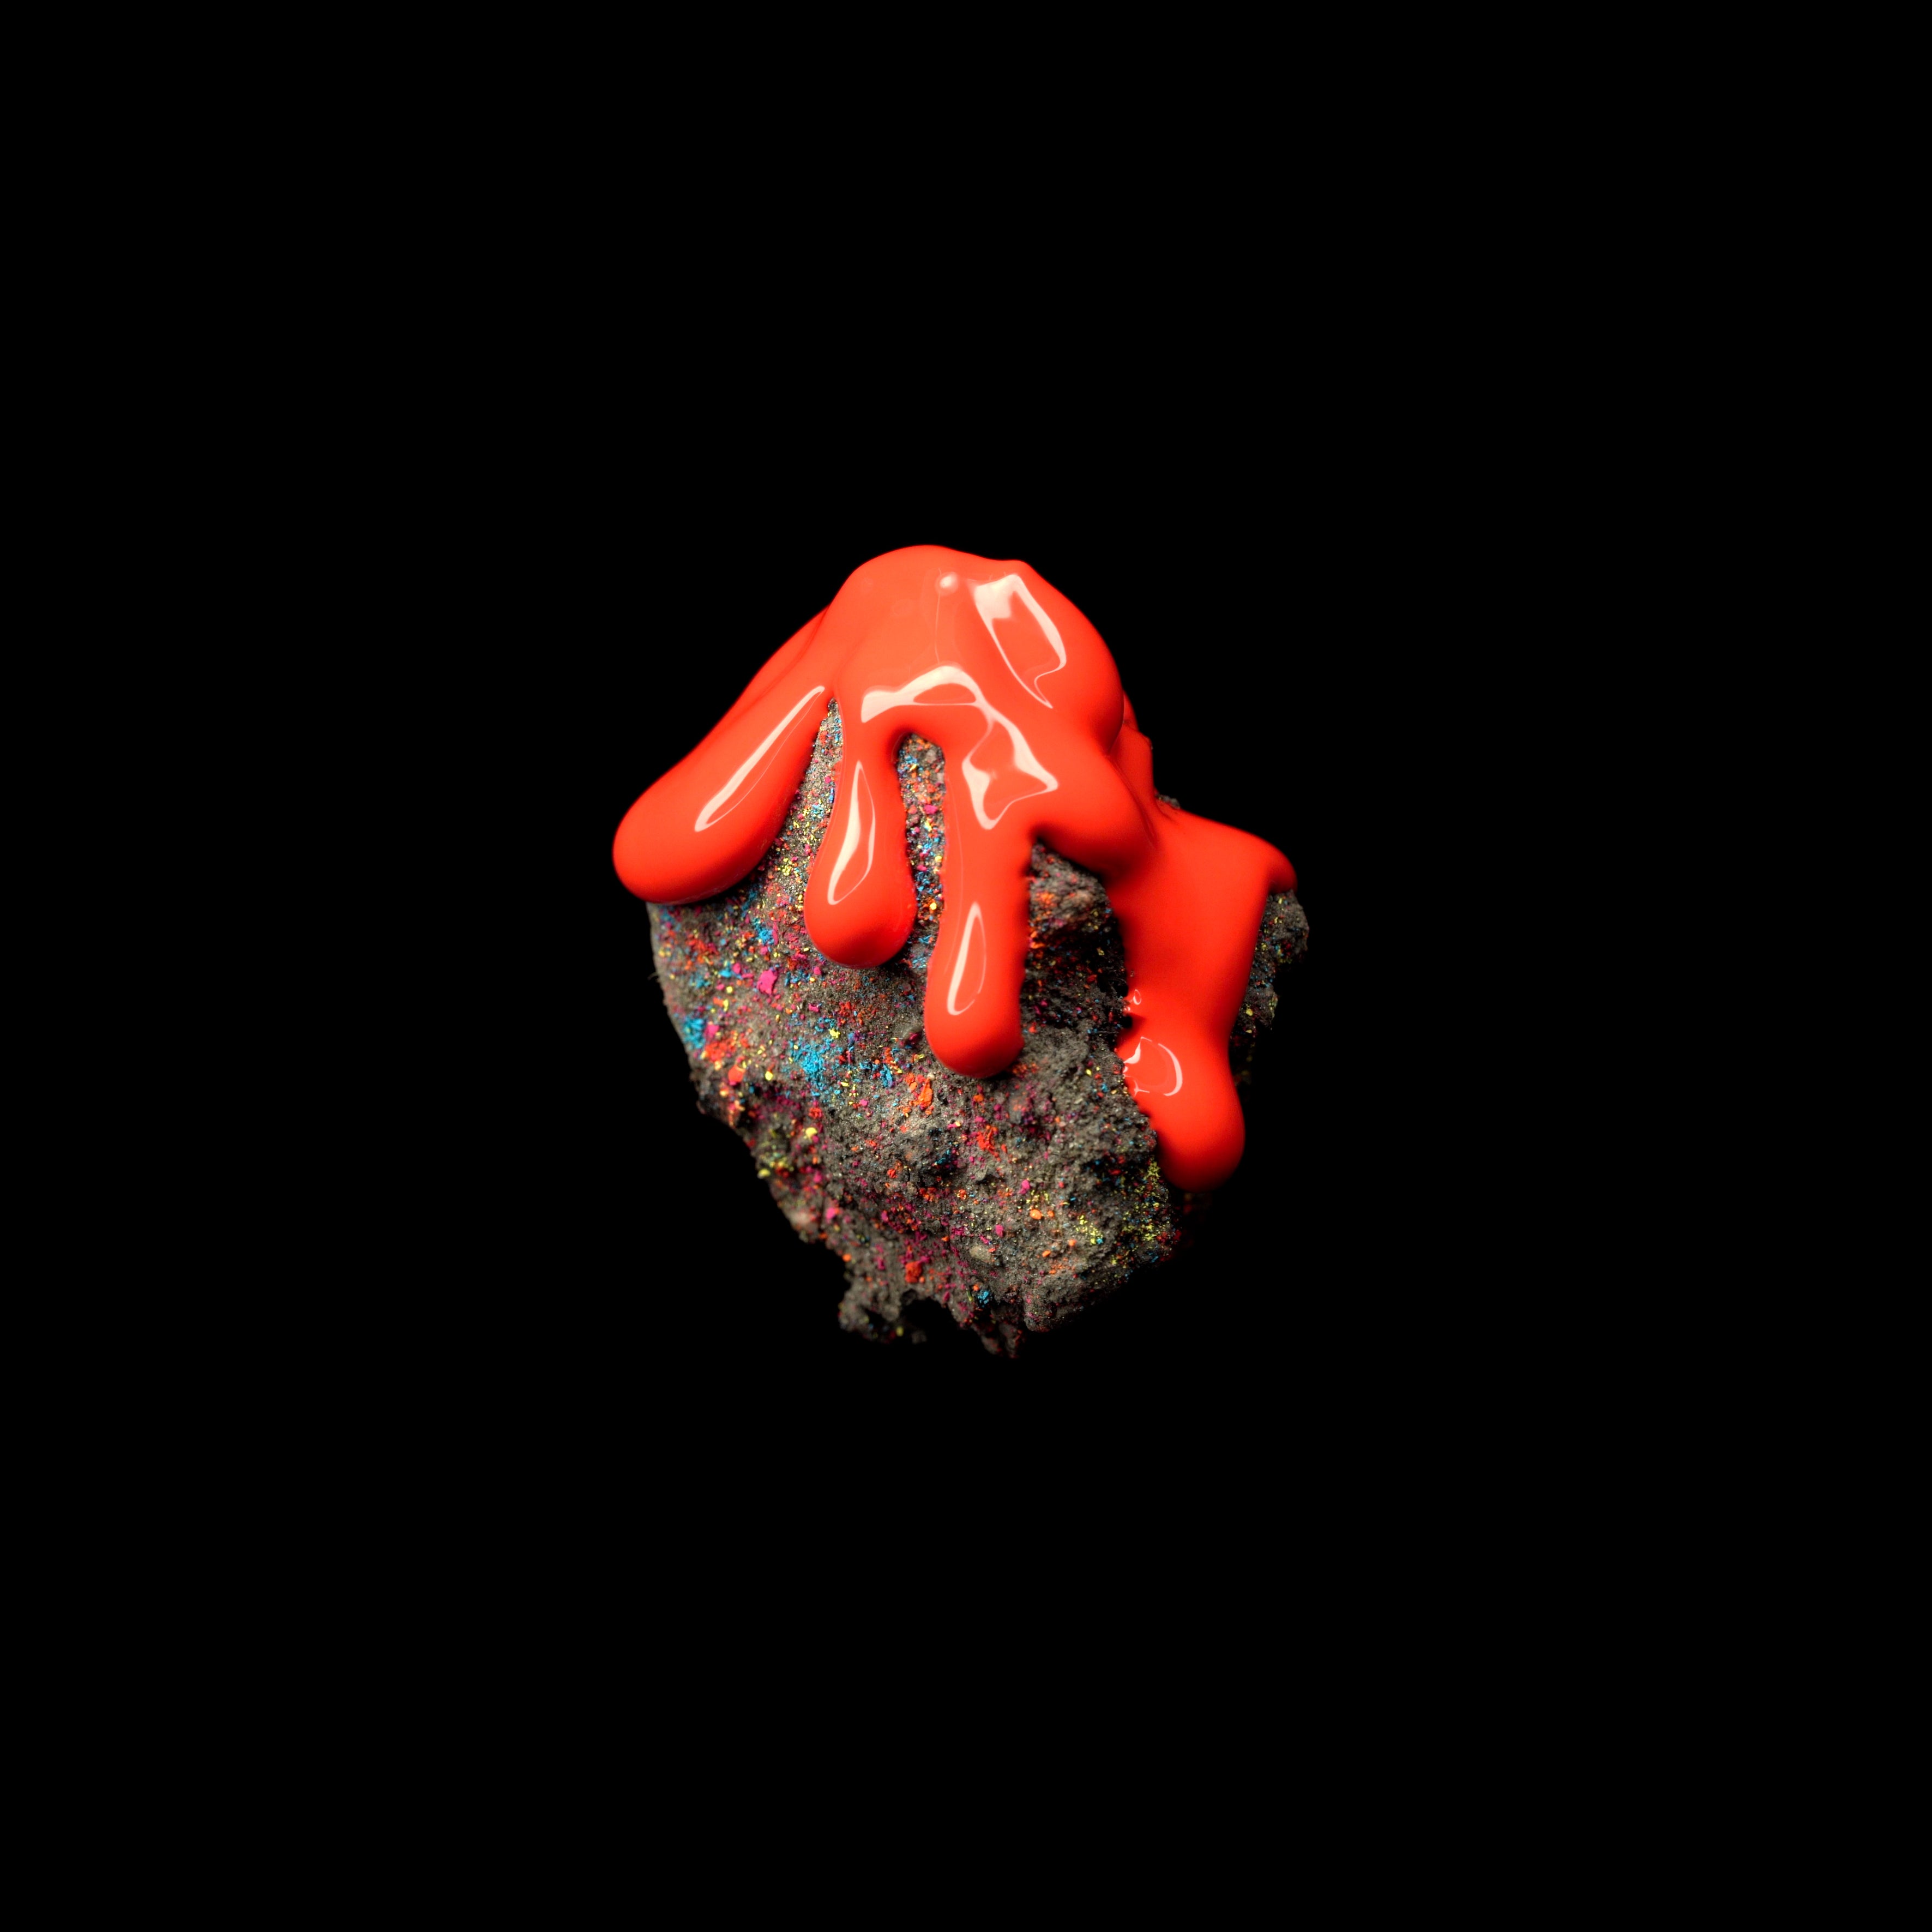 Rubber Oh - Soil: Limited Red Splatter Vinyl LP